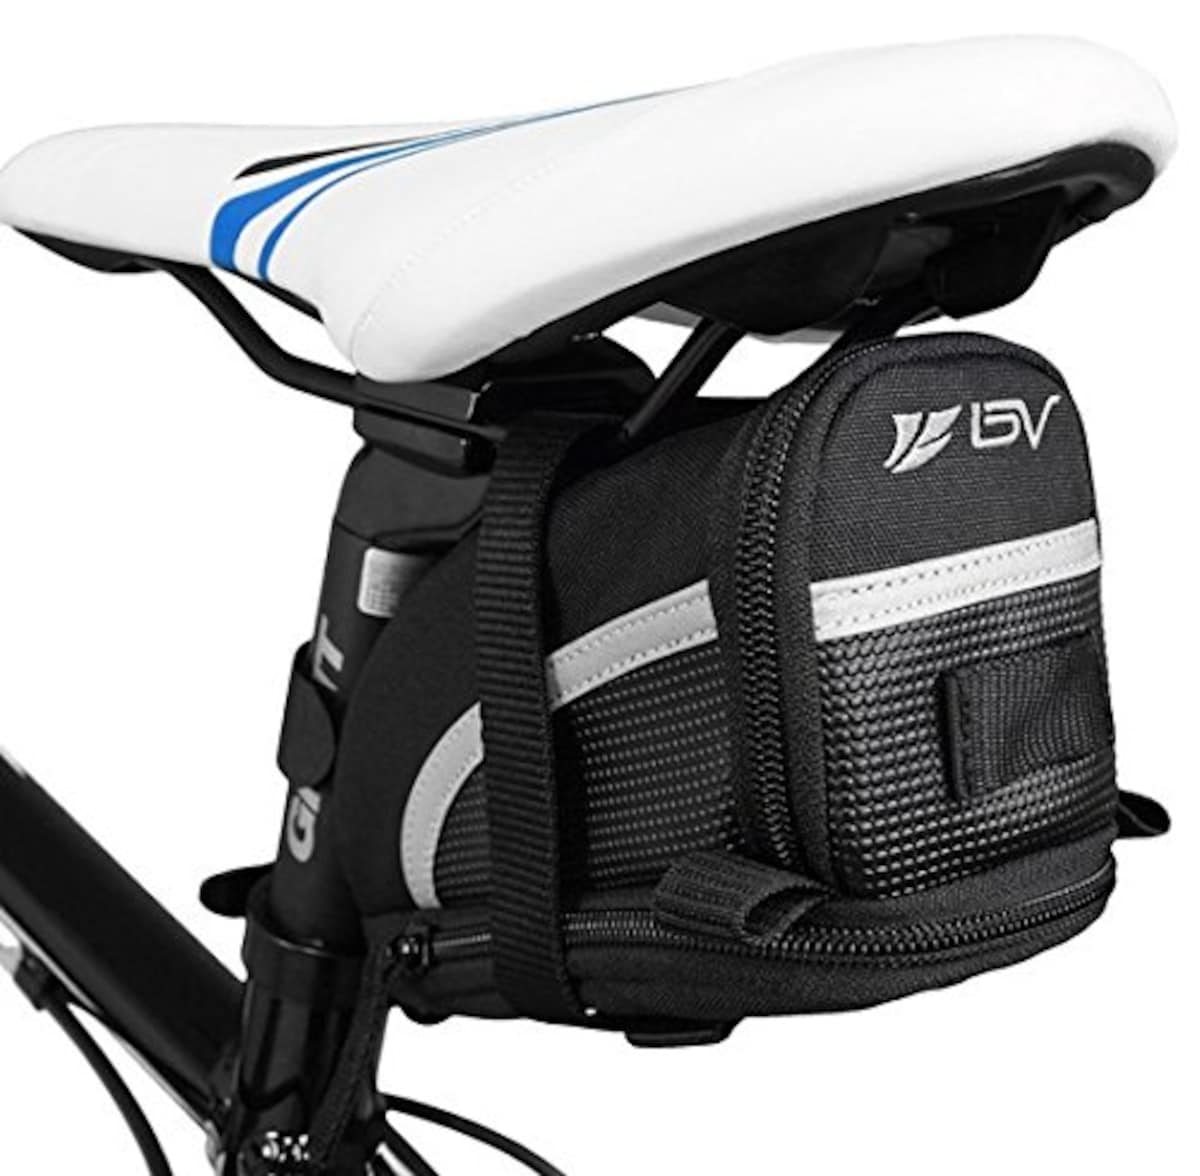 ストラップ式 自転車バッグ シートバッグ 容量拡張